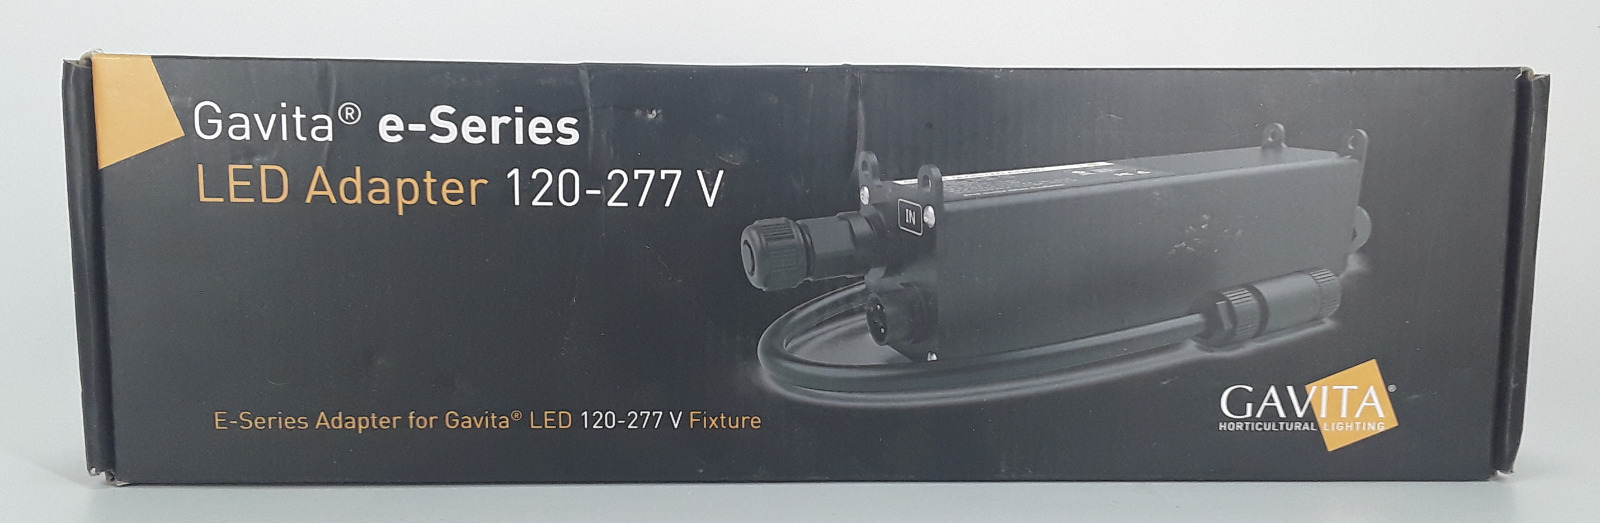 Gavita e-Series LED Adapter 120-277V